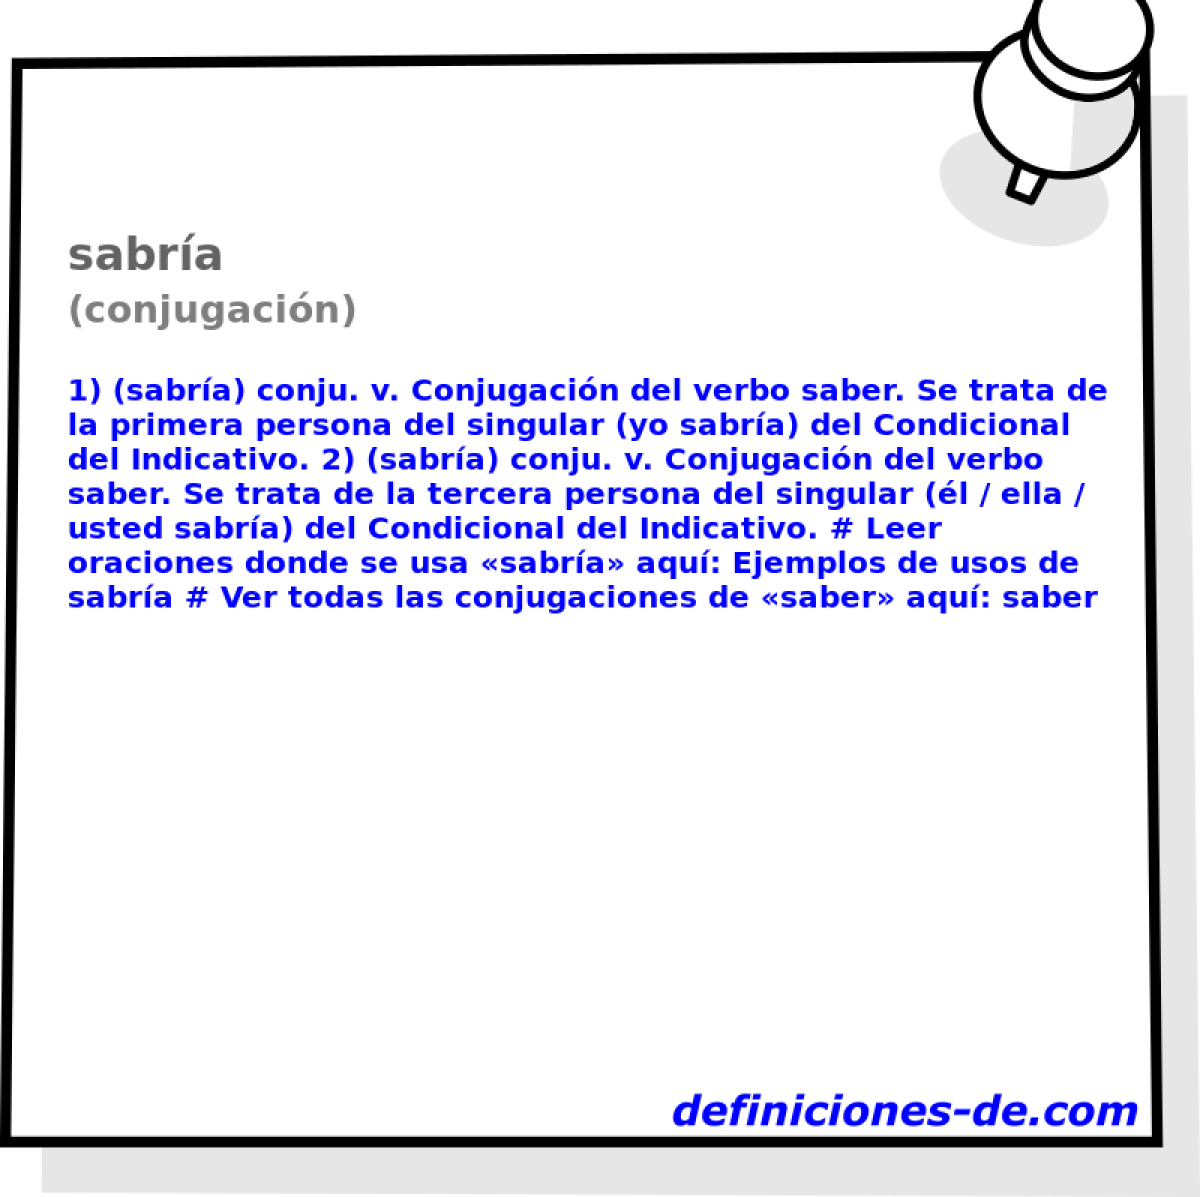 sabra (conjugacin)